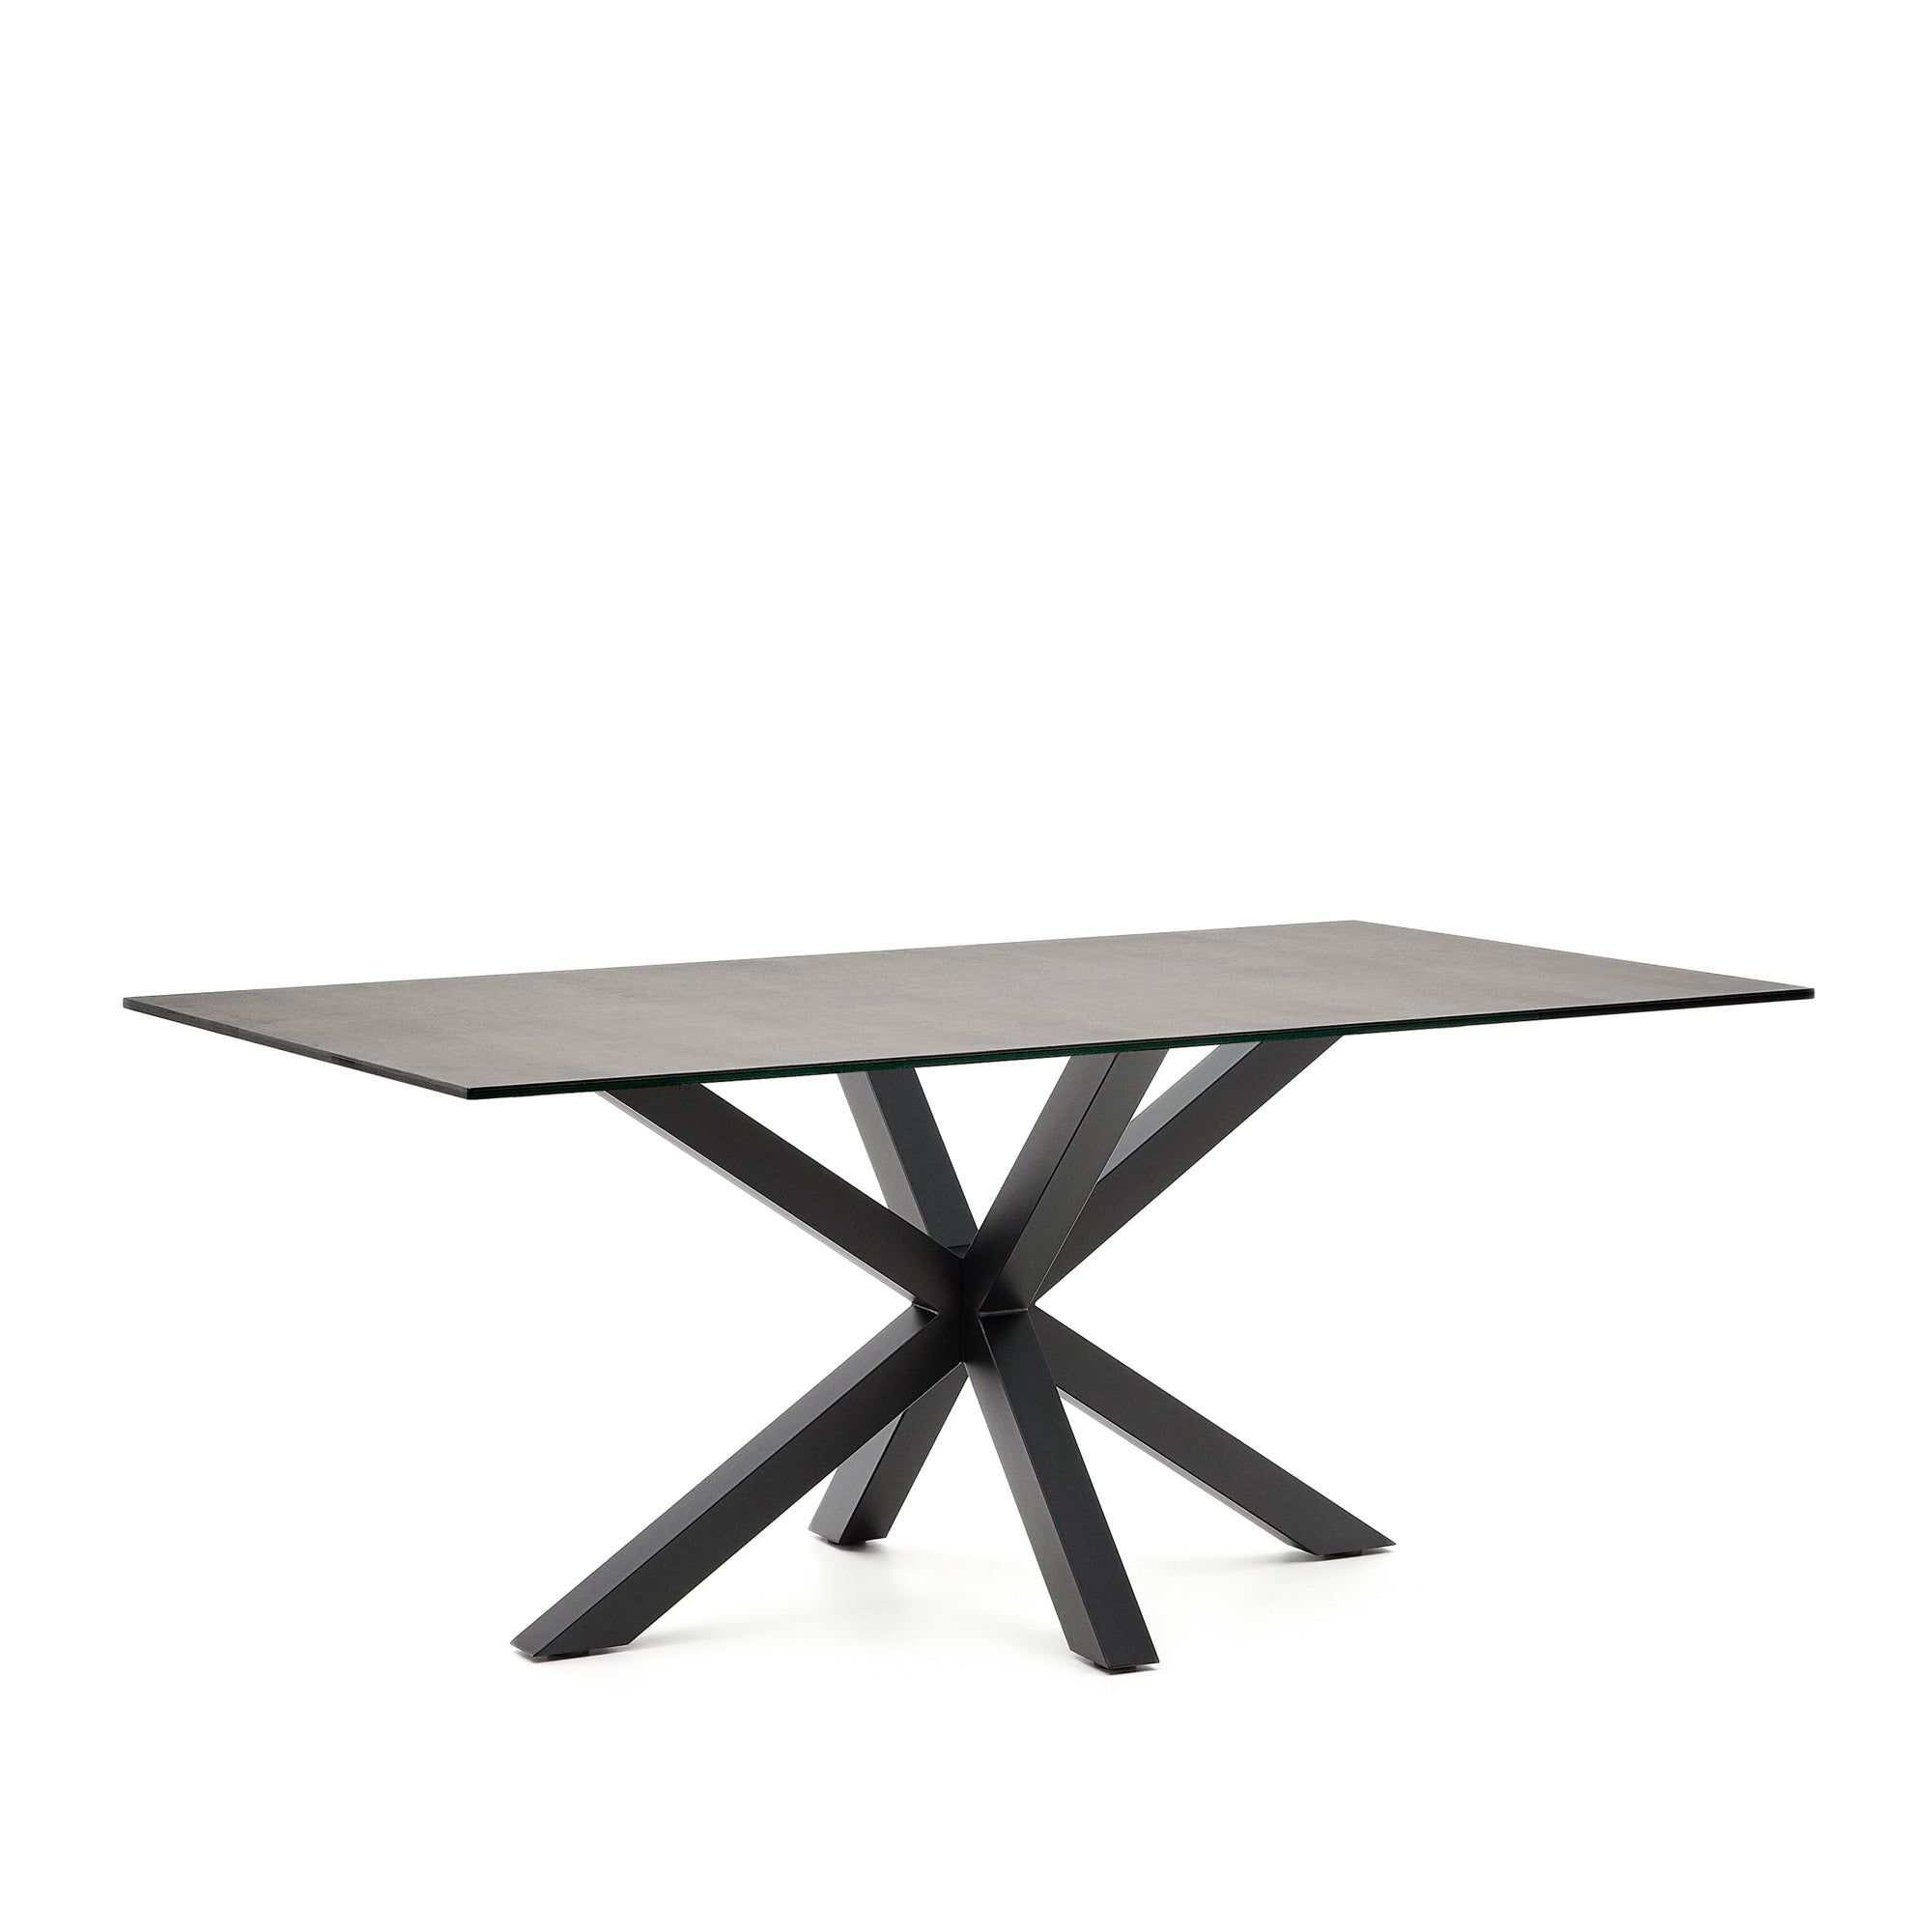 Argo asztal Iron Moss porcelánból és acél lábakkal fekete befejezéssel, 180 x 100 cm